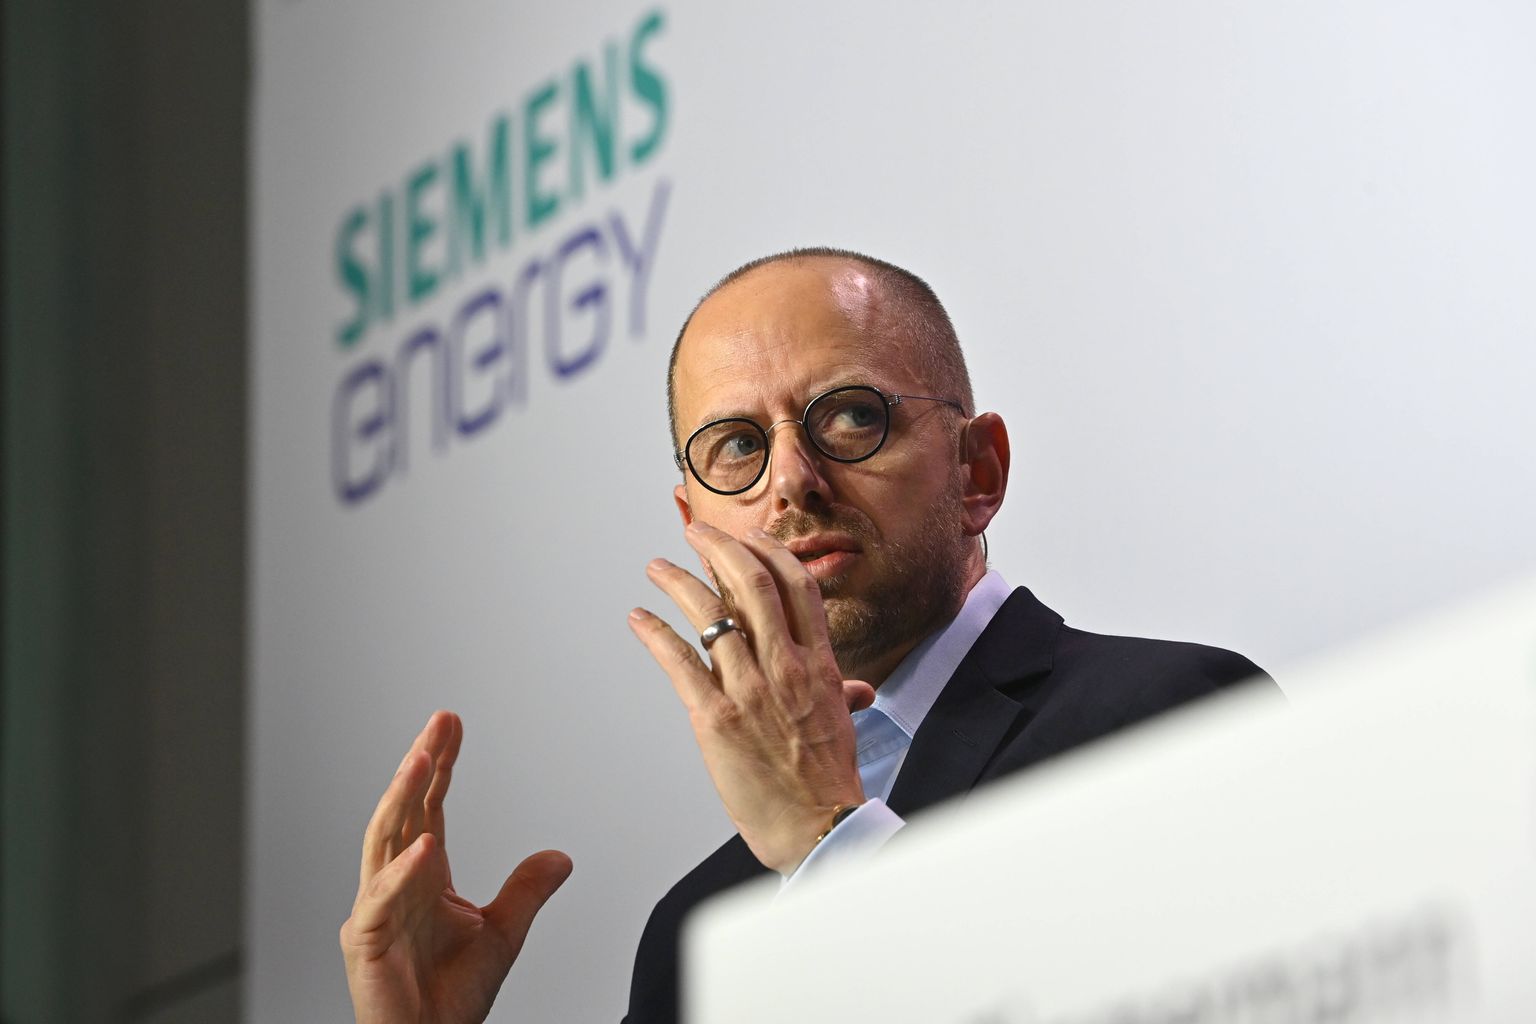 Siemensi tegevjuht Christian Bruch kuulub lobiorganisatsiooni juhatusse, mis esindab Venemaal tegutsevate Saksa ettevõtete huve.